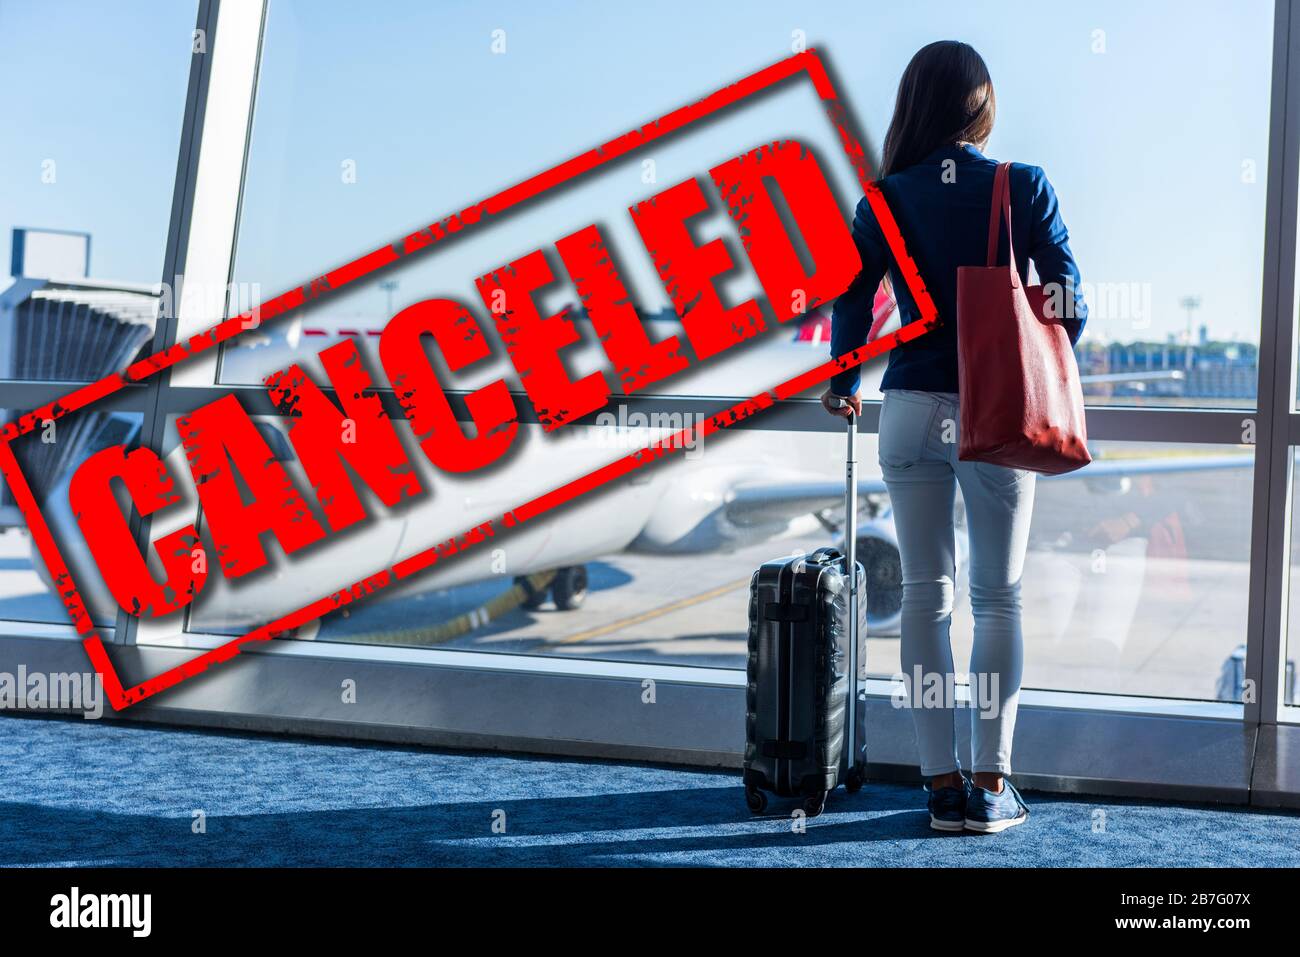 Flugreisen und Flugreisen des Flugzeugs wegen eines Reiseverbots von Coronavirus gestrichen. Krise in der Luftfahrt, in der Fluglinie und in der Industrie durch Corona-Virus-Kovid 19 oder andere. Roter Stempeltext auf der Ebene im Flughafen abgebrochen Stockfoto